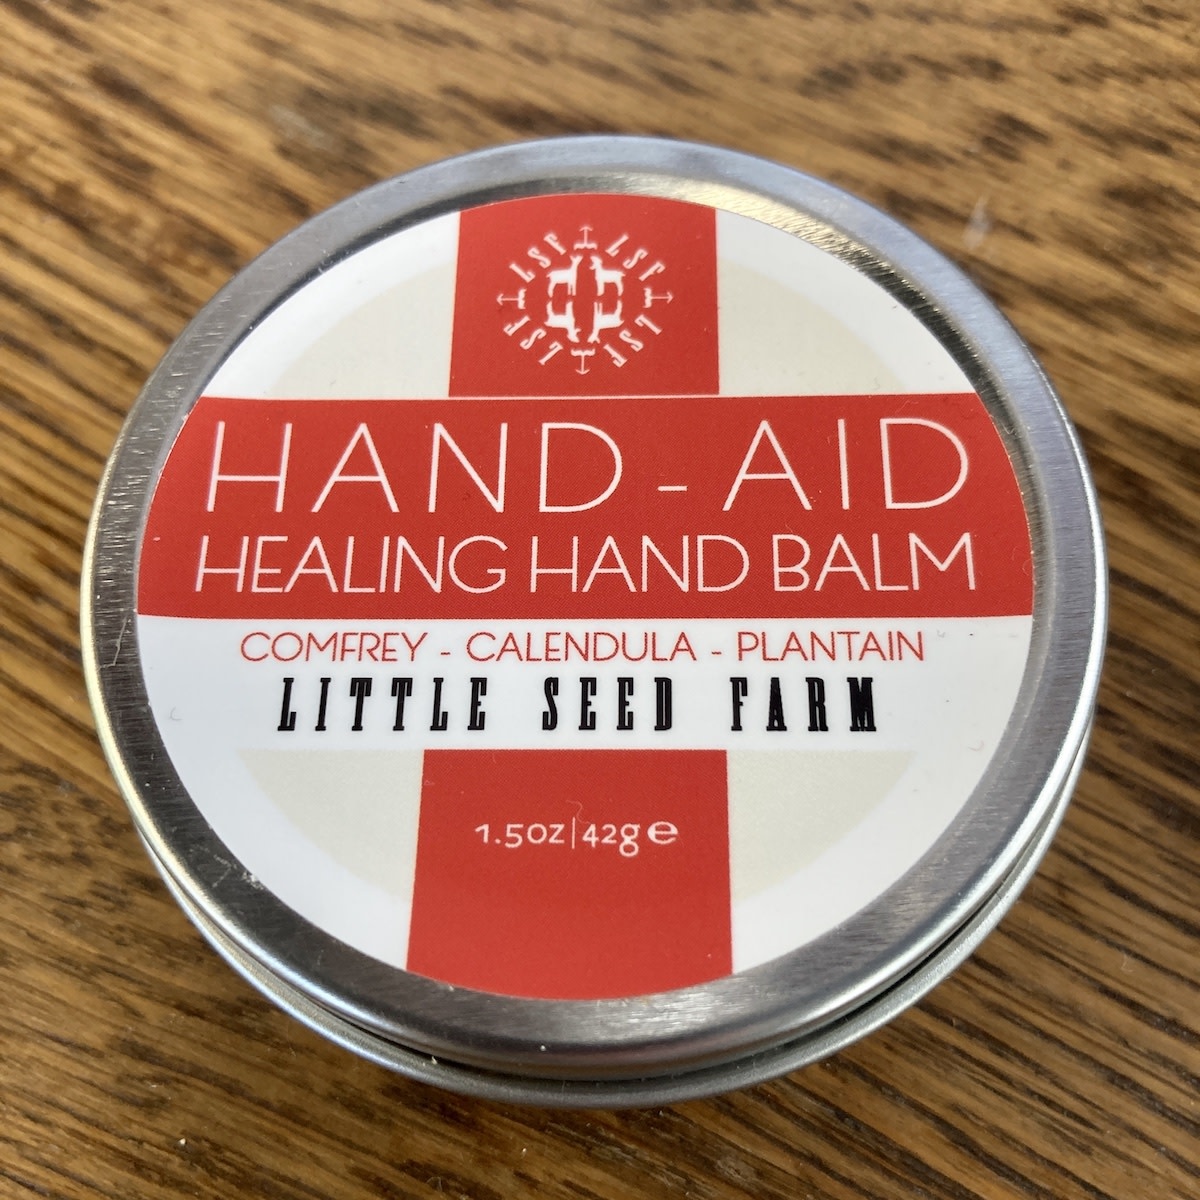 Little Seed Farm Little Seed Farm Hand-Aid Healing Hand Balm, 1.5 oz.